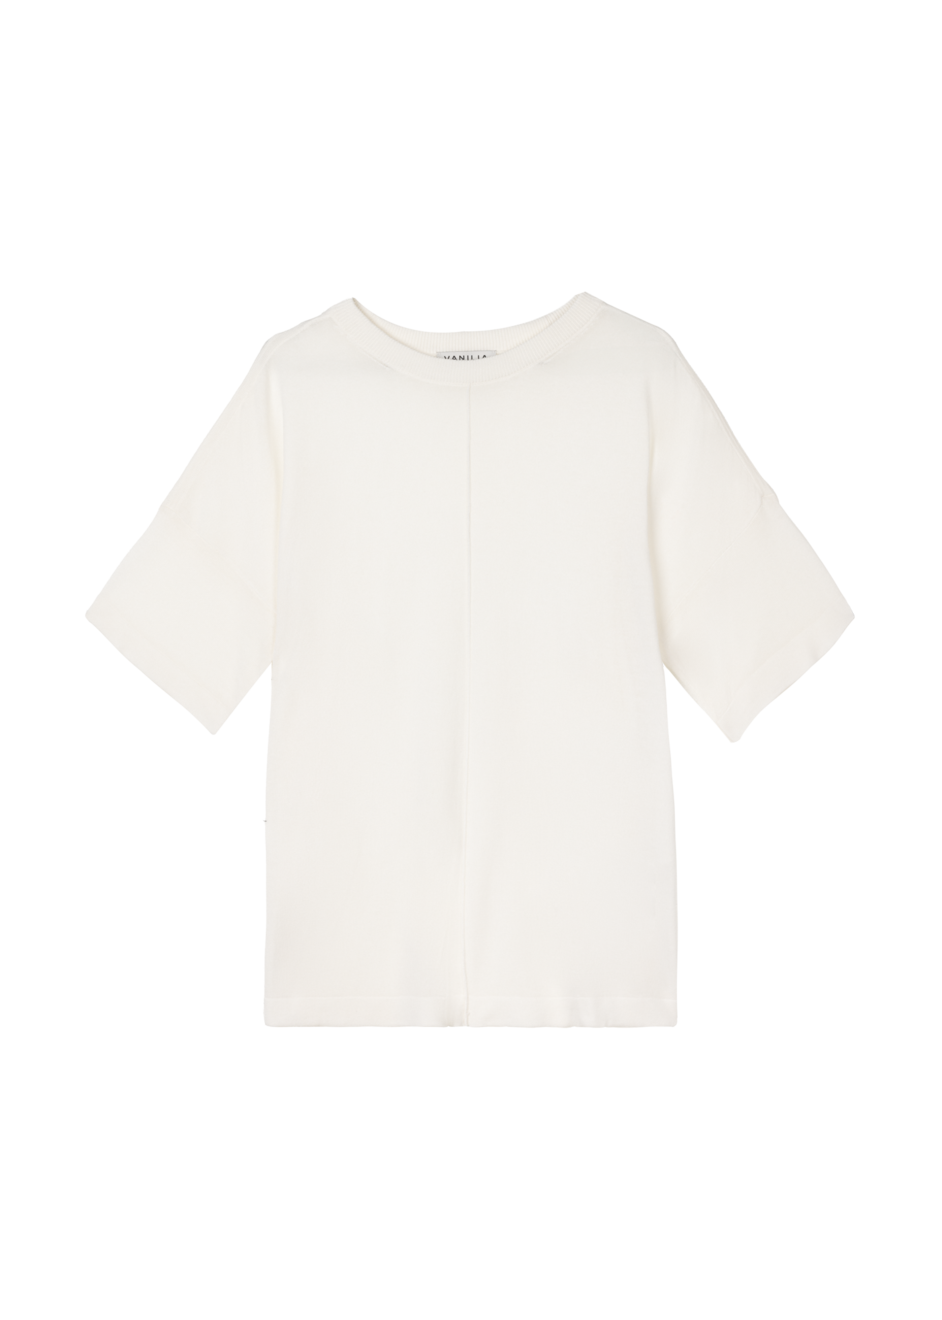 Aanbieding van Sheer knit T-shirt voor 99,95€ bij Vanilia